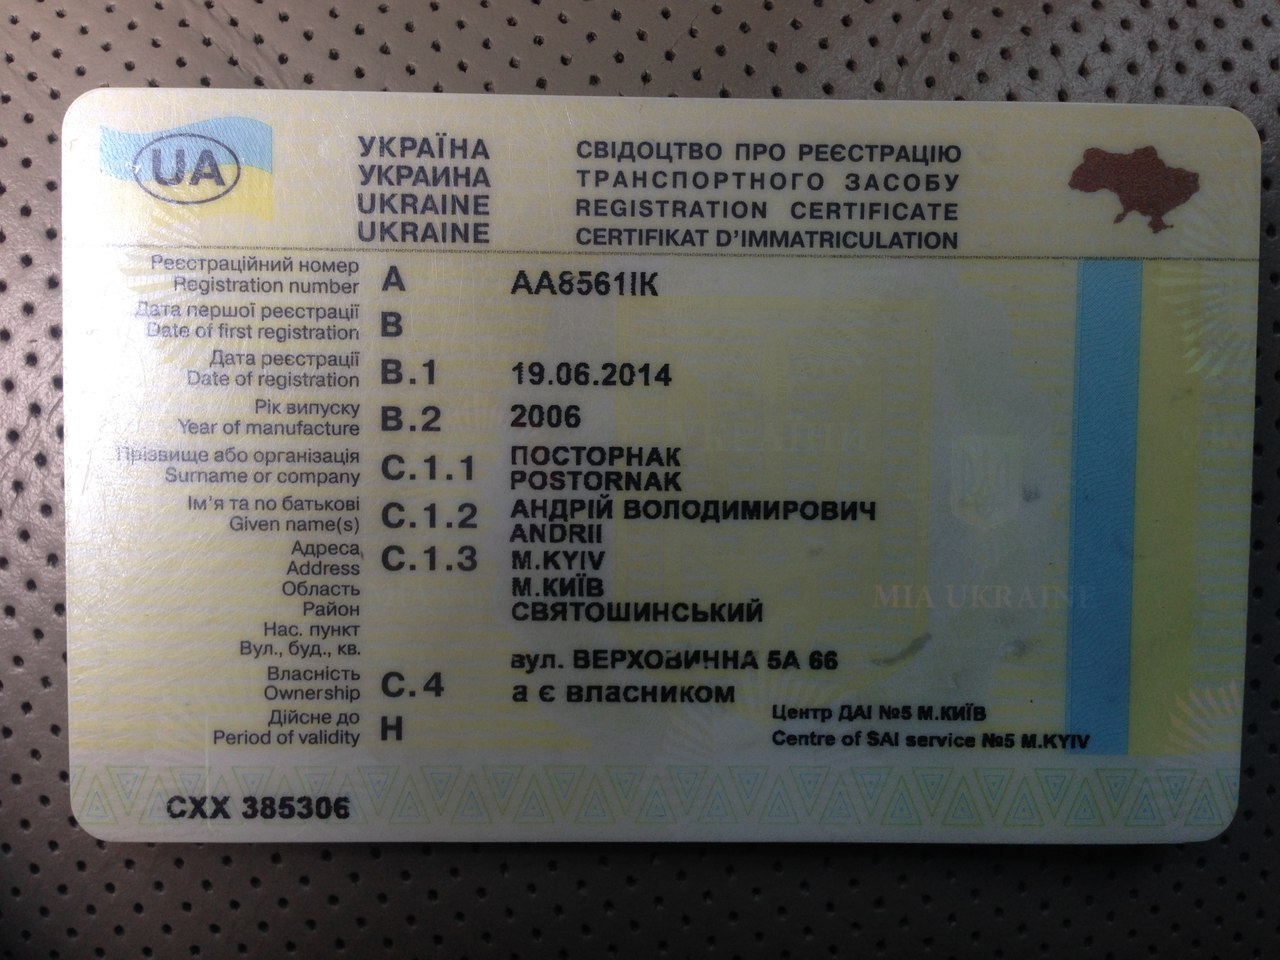 Паспорт Украины, ВНЖ, водительские права, документы на авто, мото, диплом о высшем образовании  - фотография